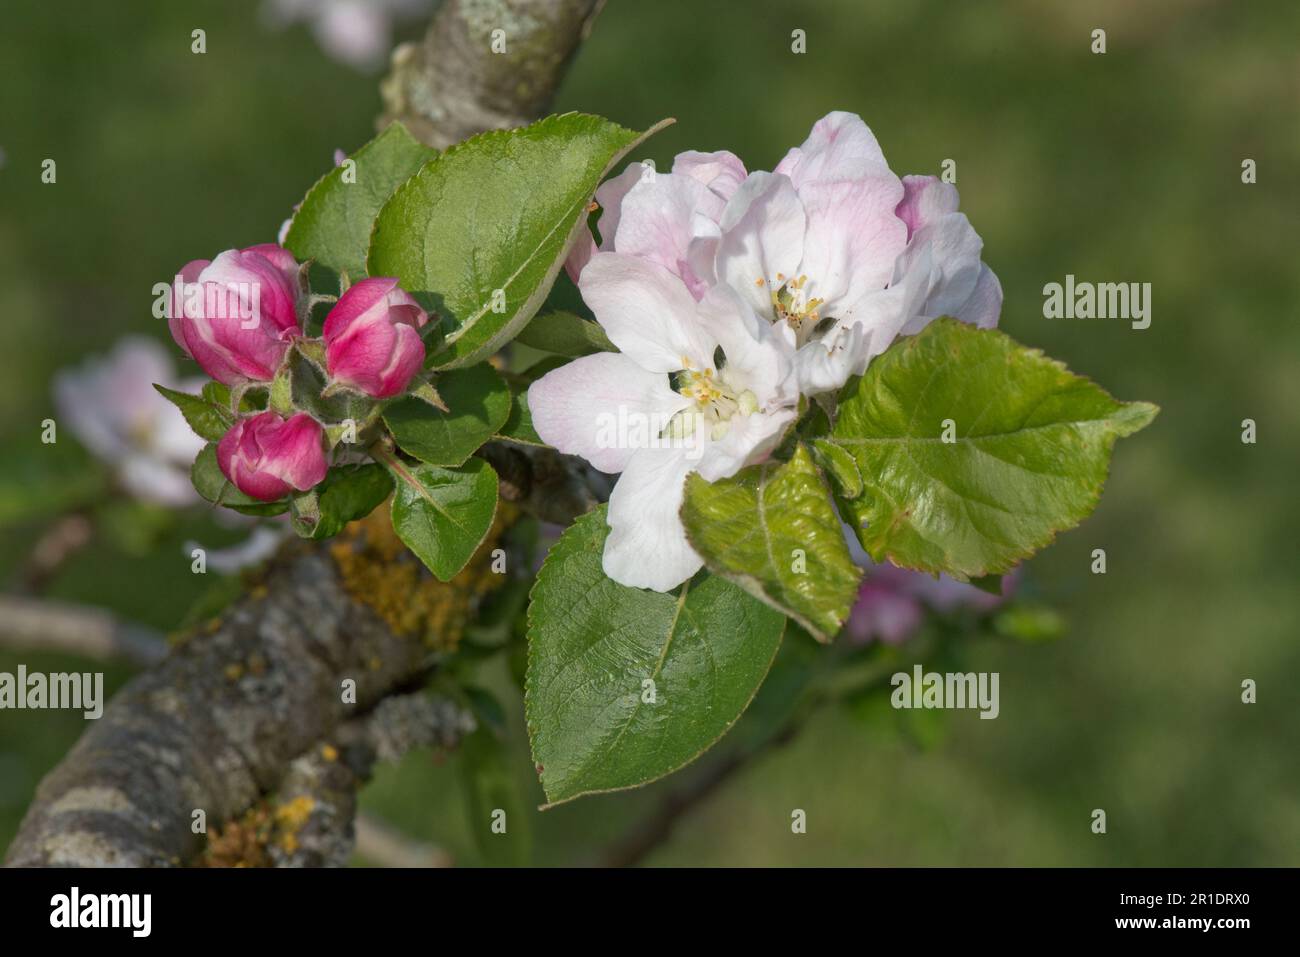 Fleurs blanches et roses et bourgeons roses sur un Egremont Russet mangeant pommier (Malus domestica) avec de jeunes feuilles au printemps, Berkshire, mai Banque D'Images